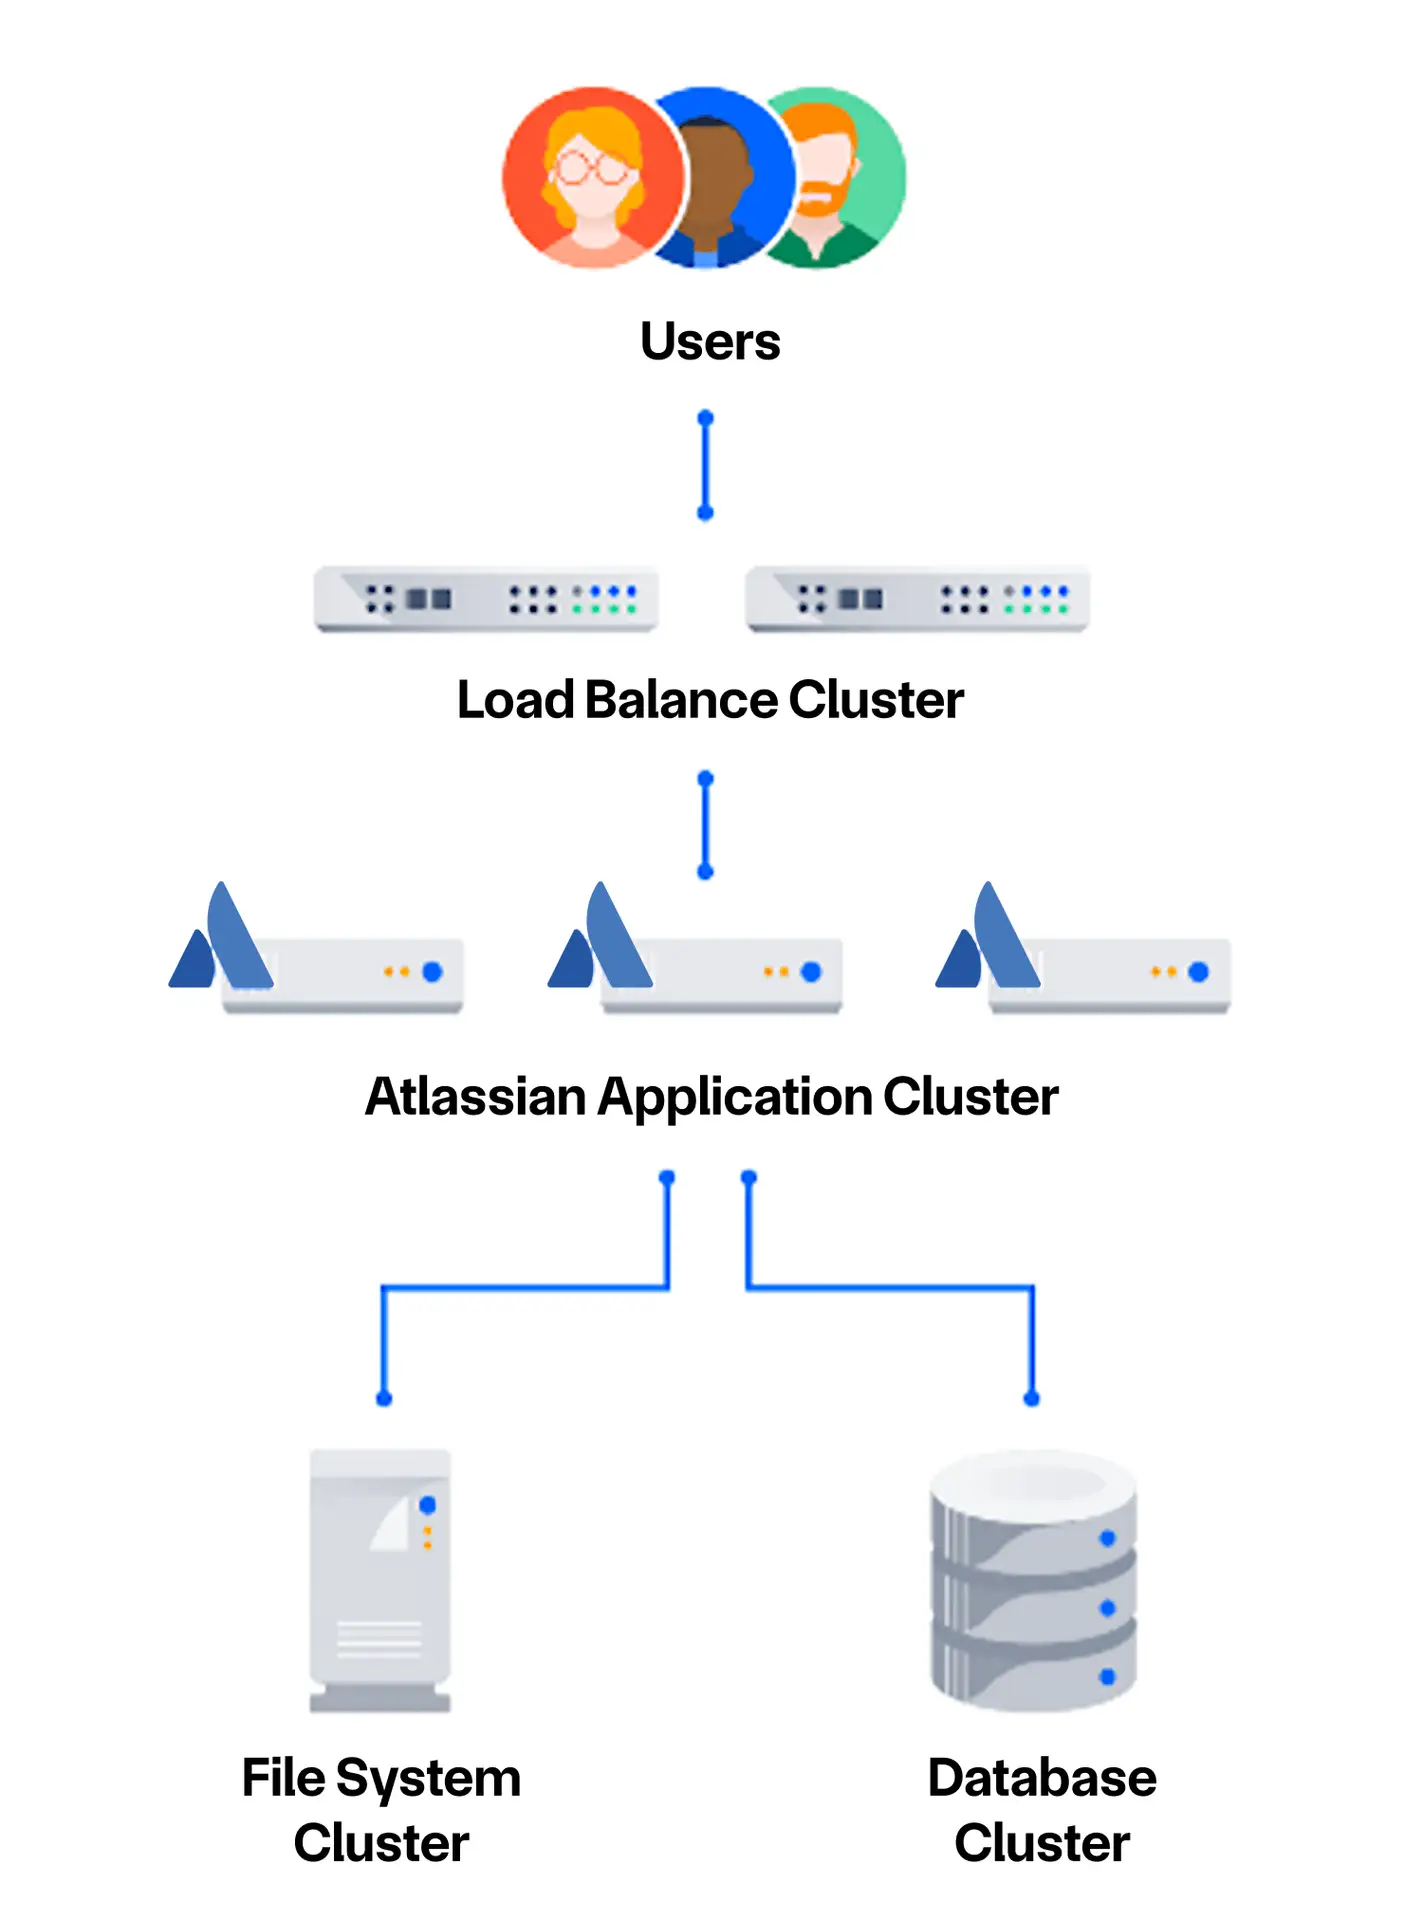 Funktionsweise des Atlassian Data Center